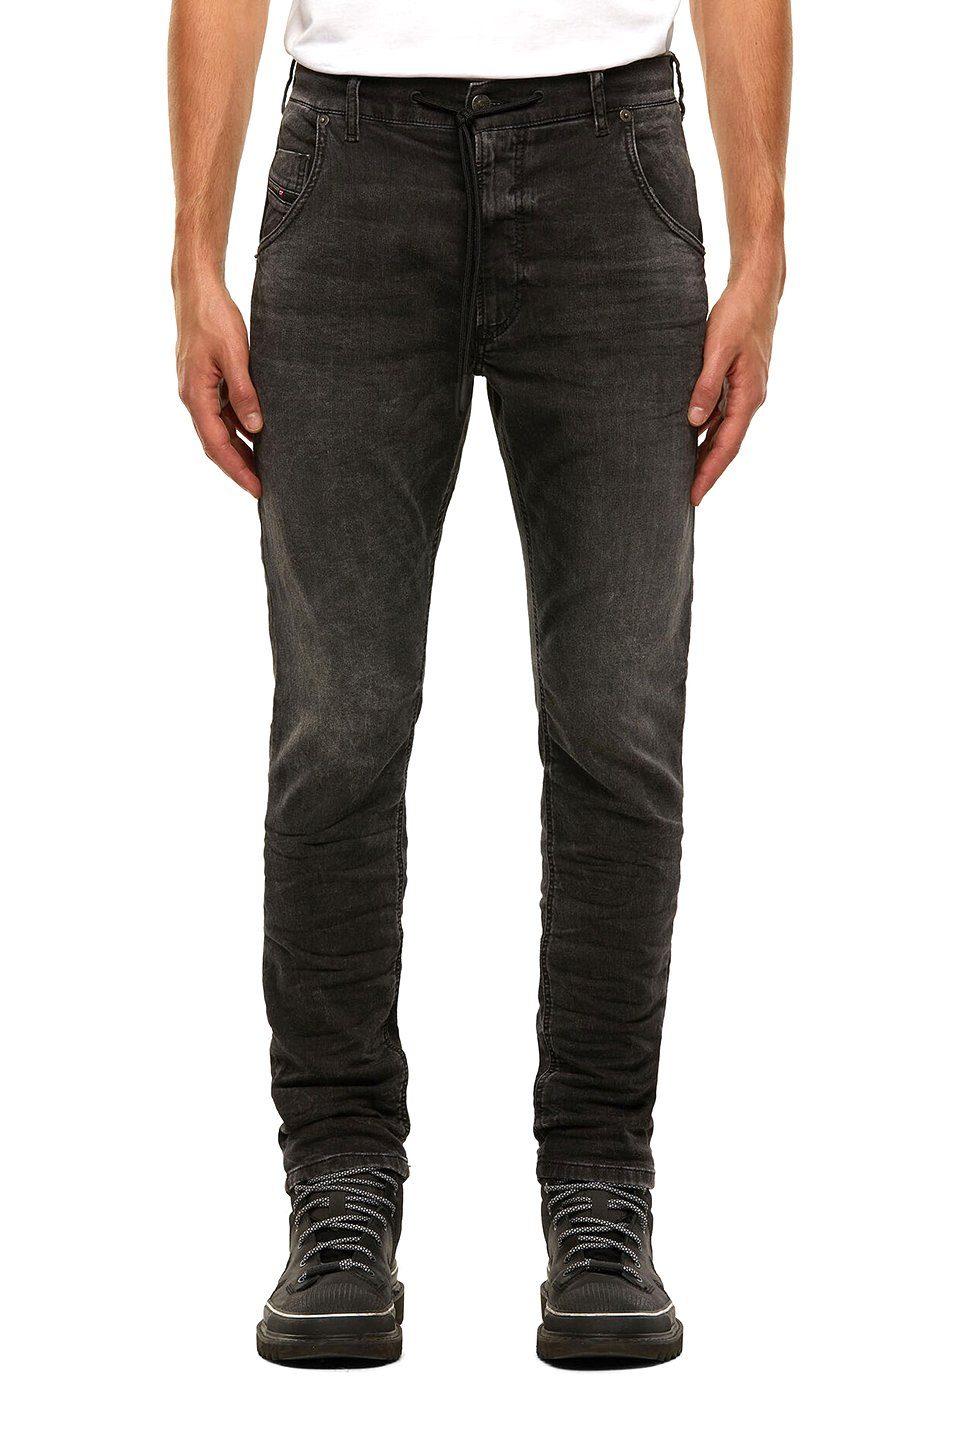 - Krooley - Diesel 009FZ Länge:32 Stretch JoggJeans Tapered-fit-Jeans